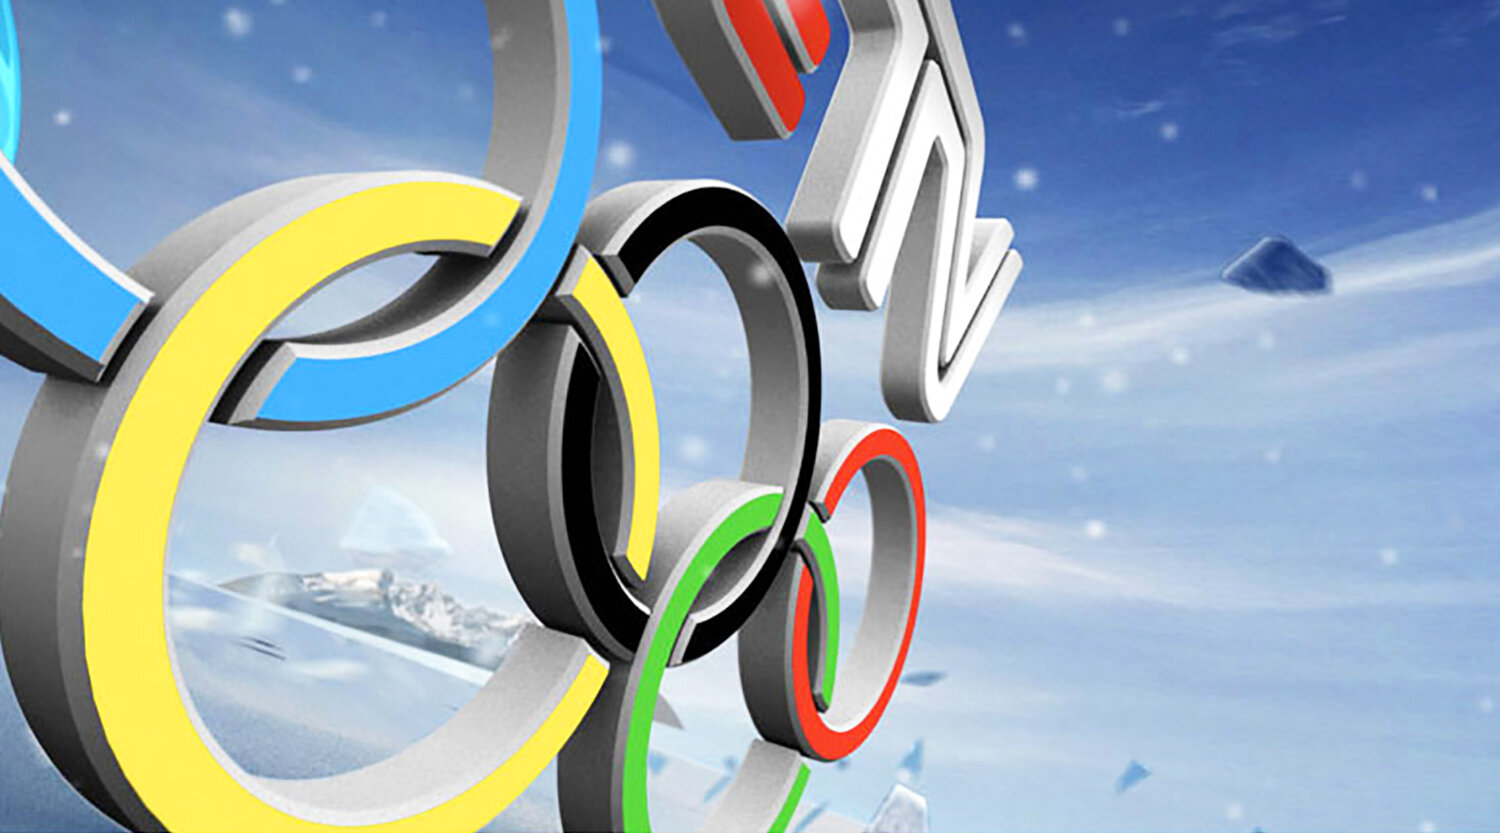 METERA Branding-Vancouver Olympics-Screen Grab.png